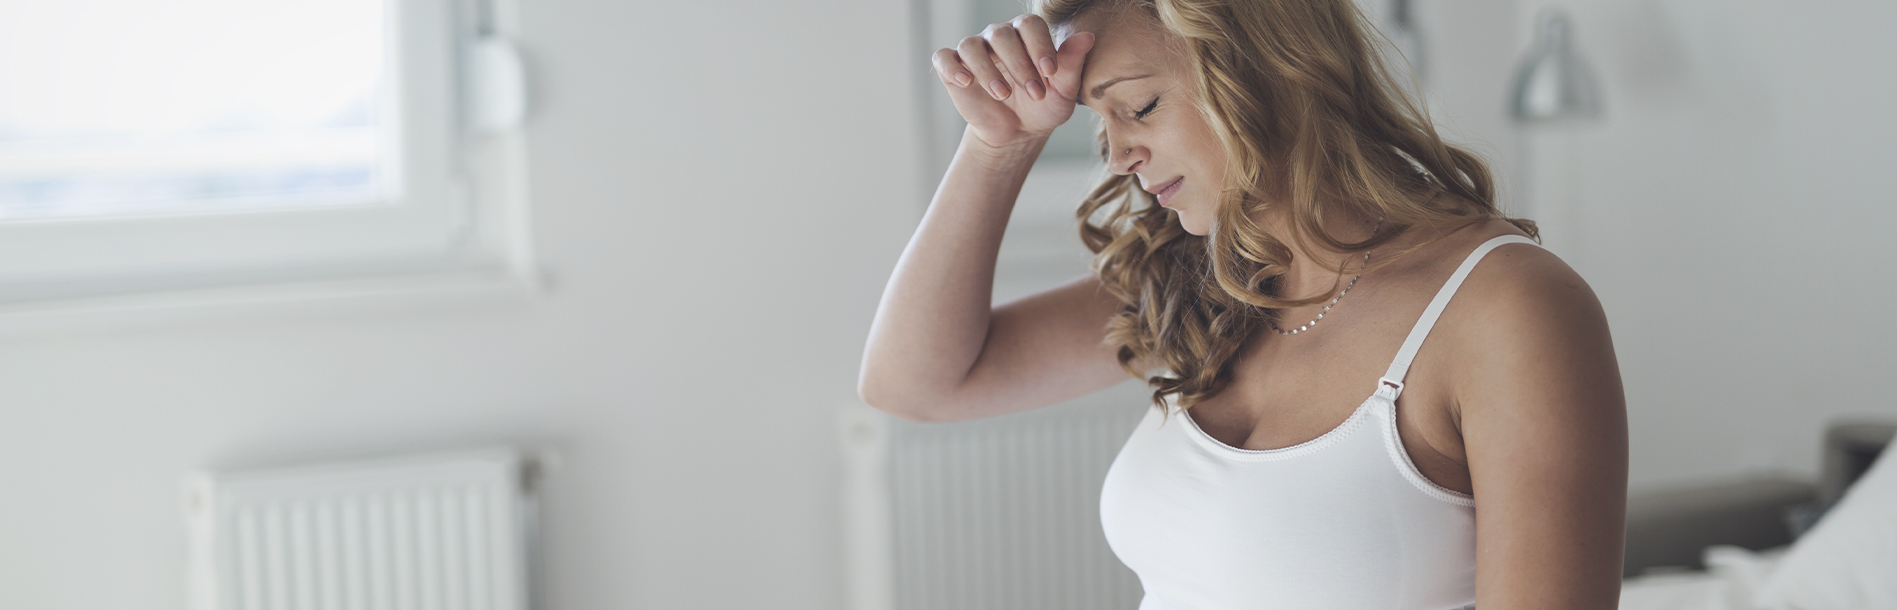 Remédio para dor de cabeça na gravidez: posso tomar?